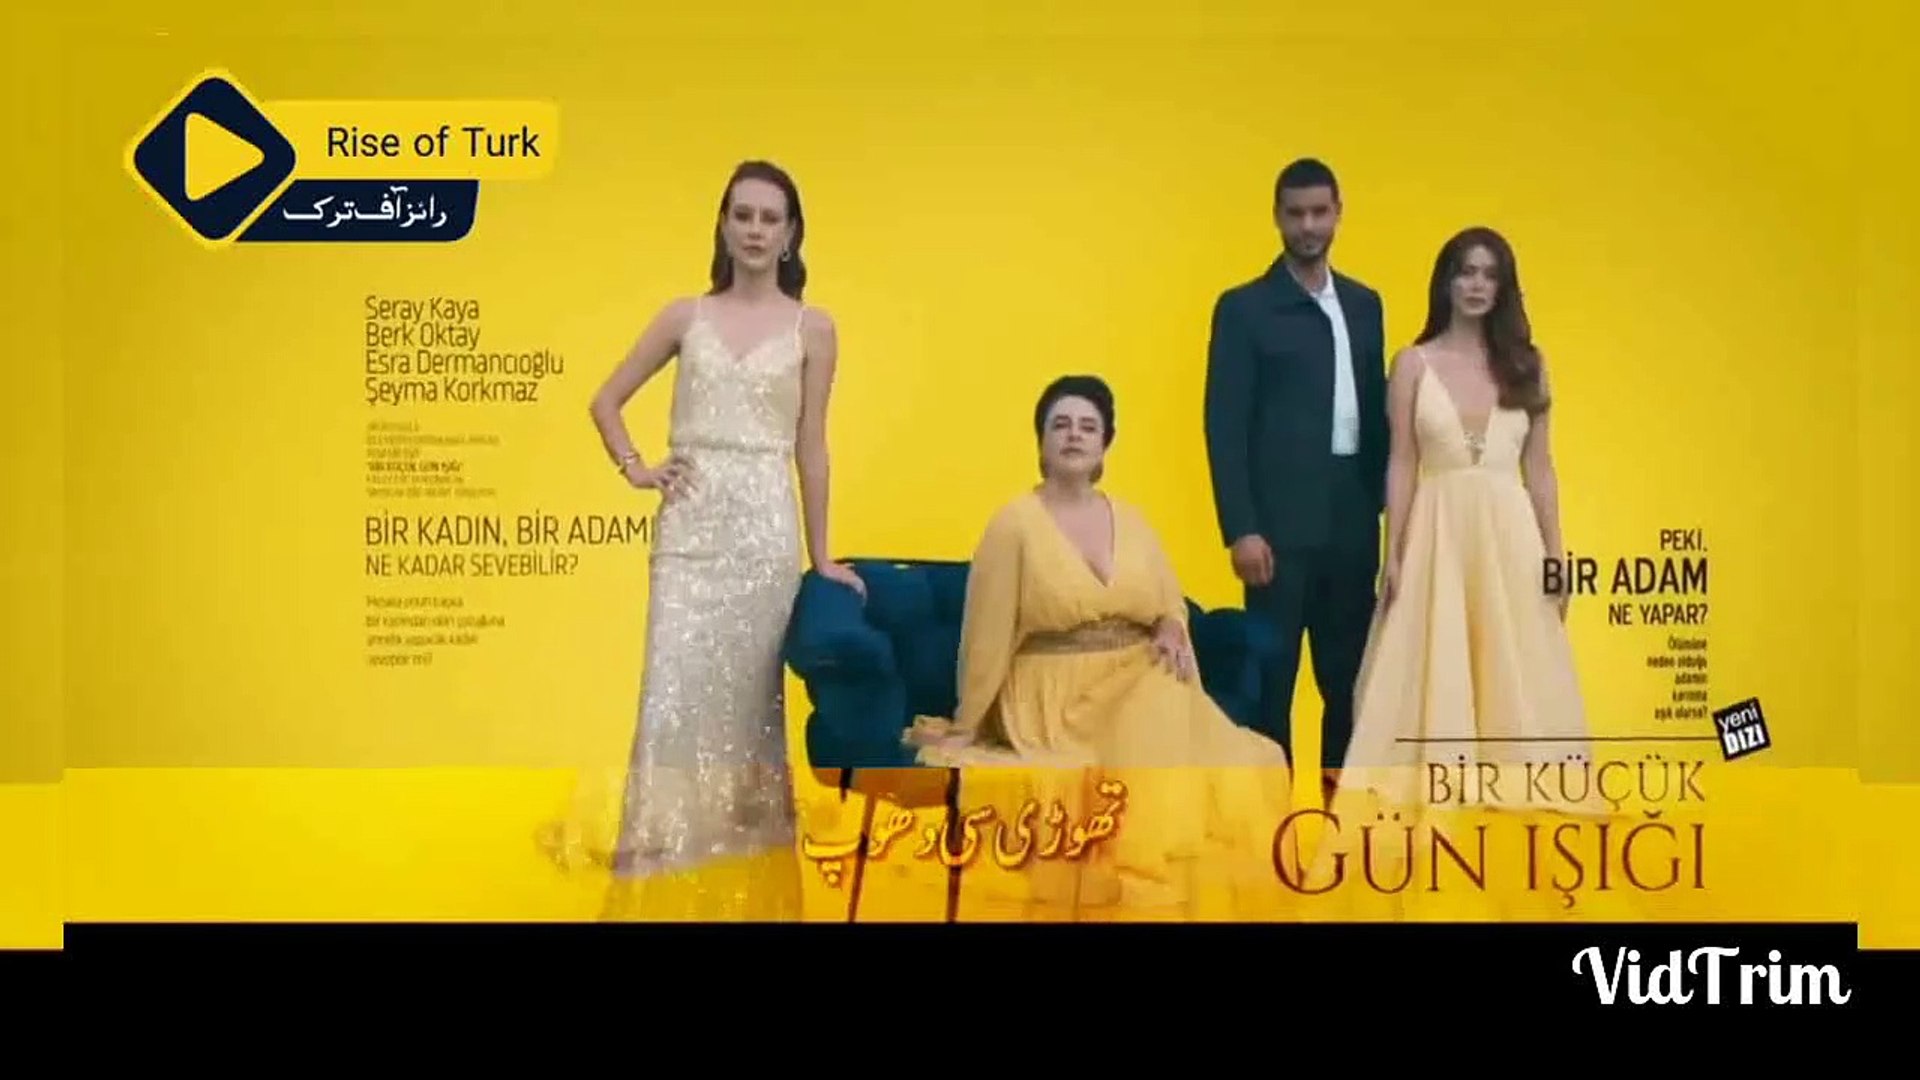 Kurulus Osman season 4 promo in Urdu